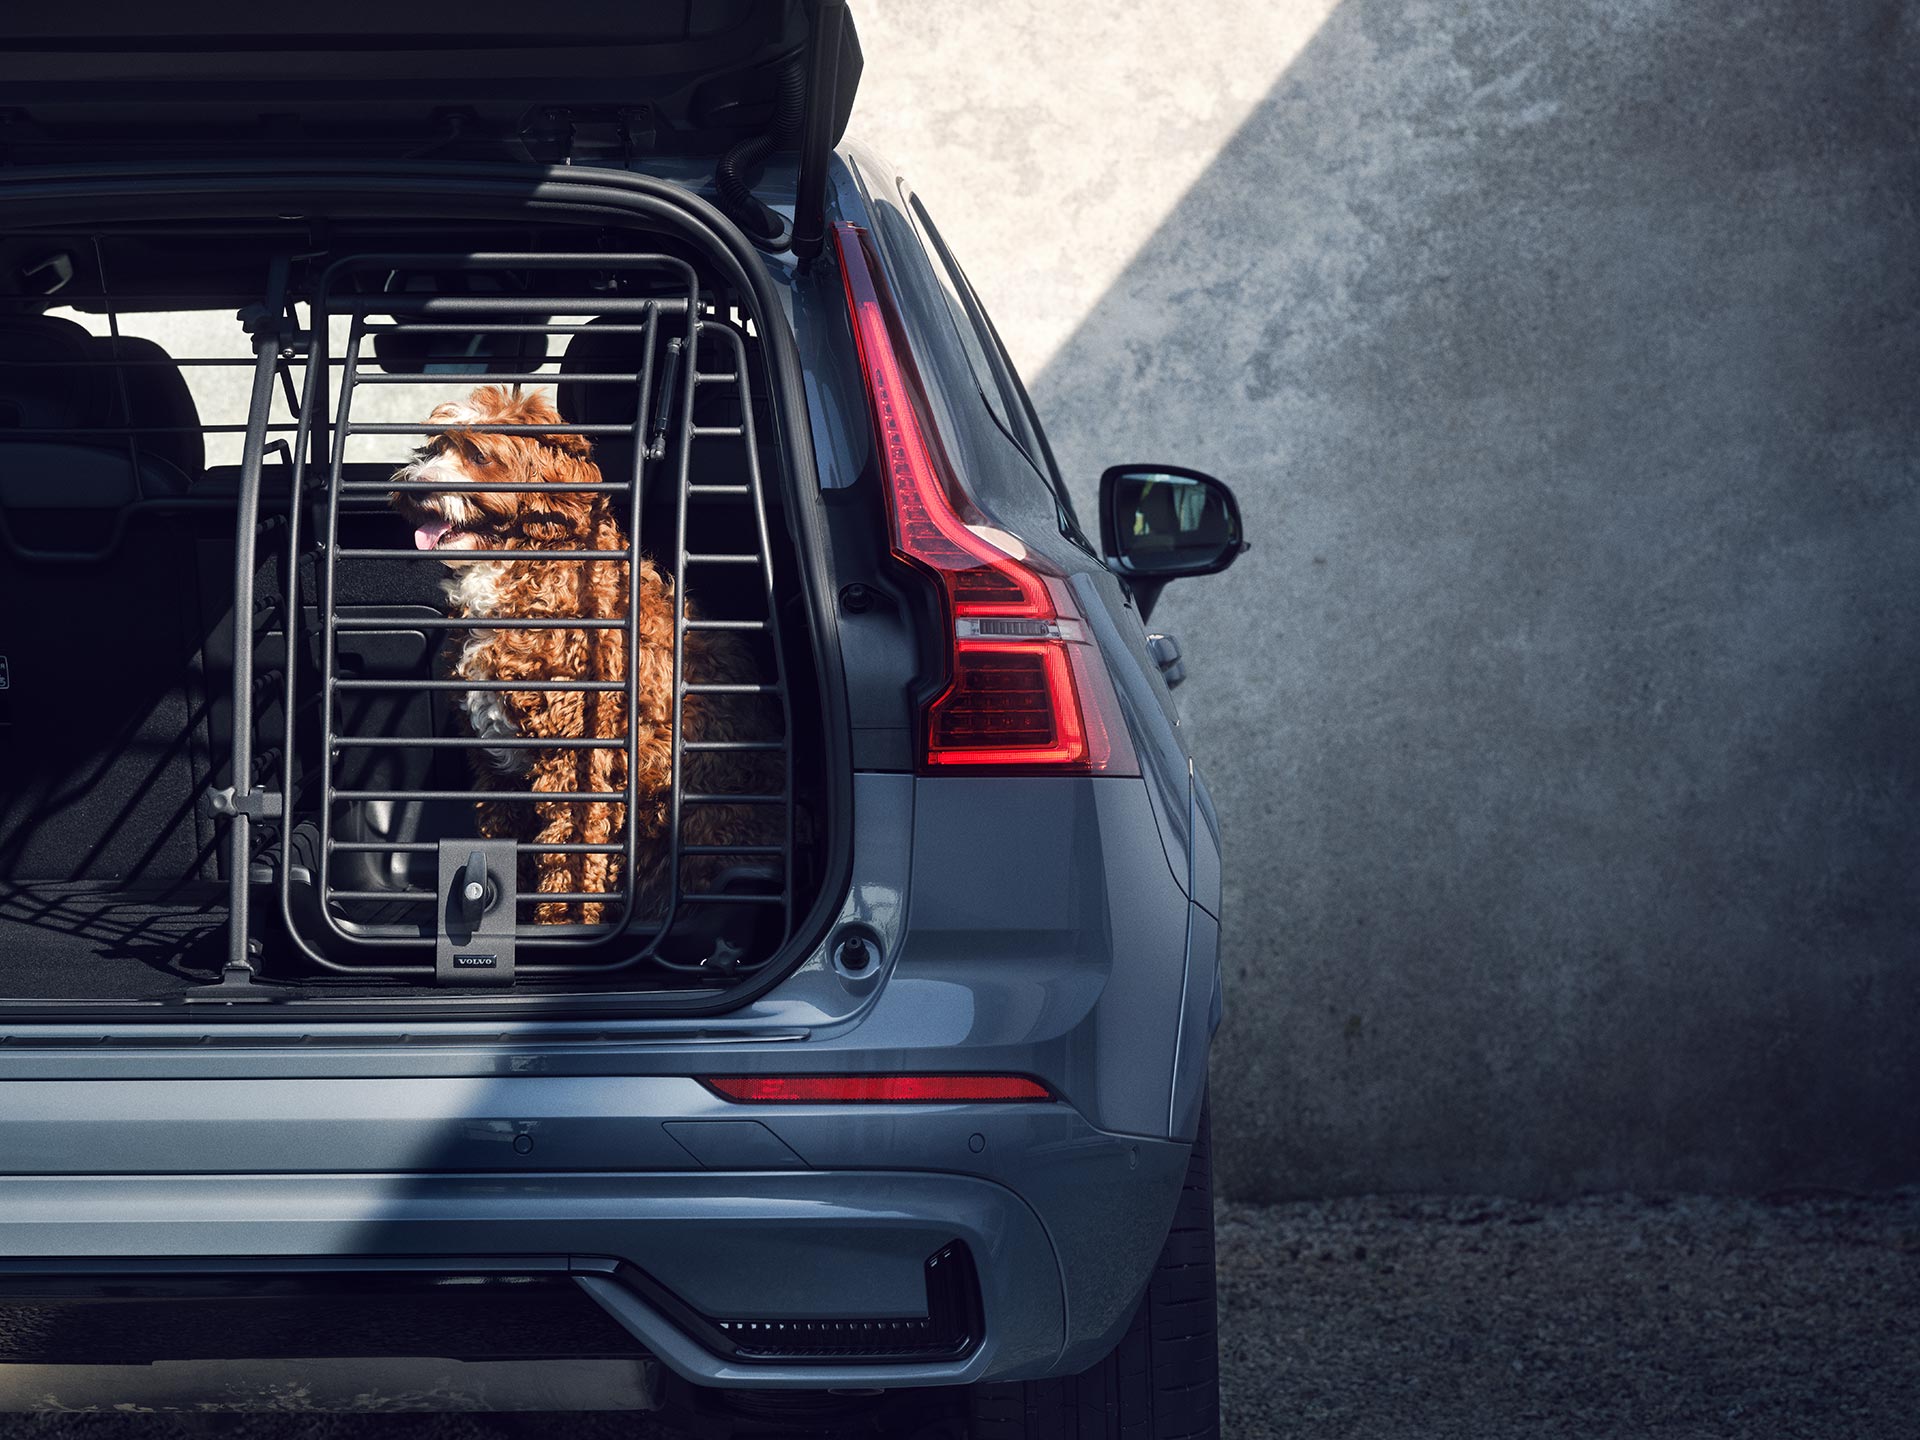 En kastanjefarget hund sitter i et låst hundebur, et spesielt godt sikret tilbehør med høy komfort for kjæledyr som reiser i Volvos biler.